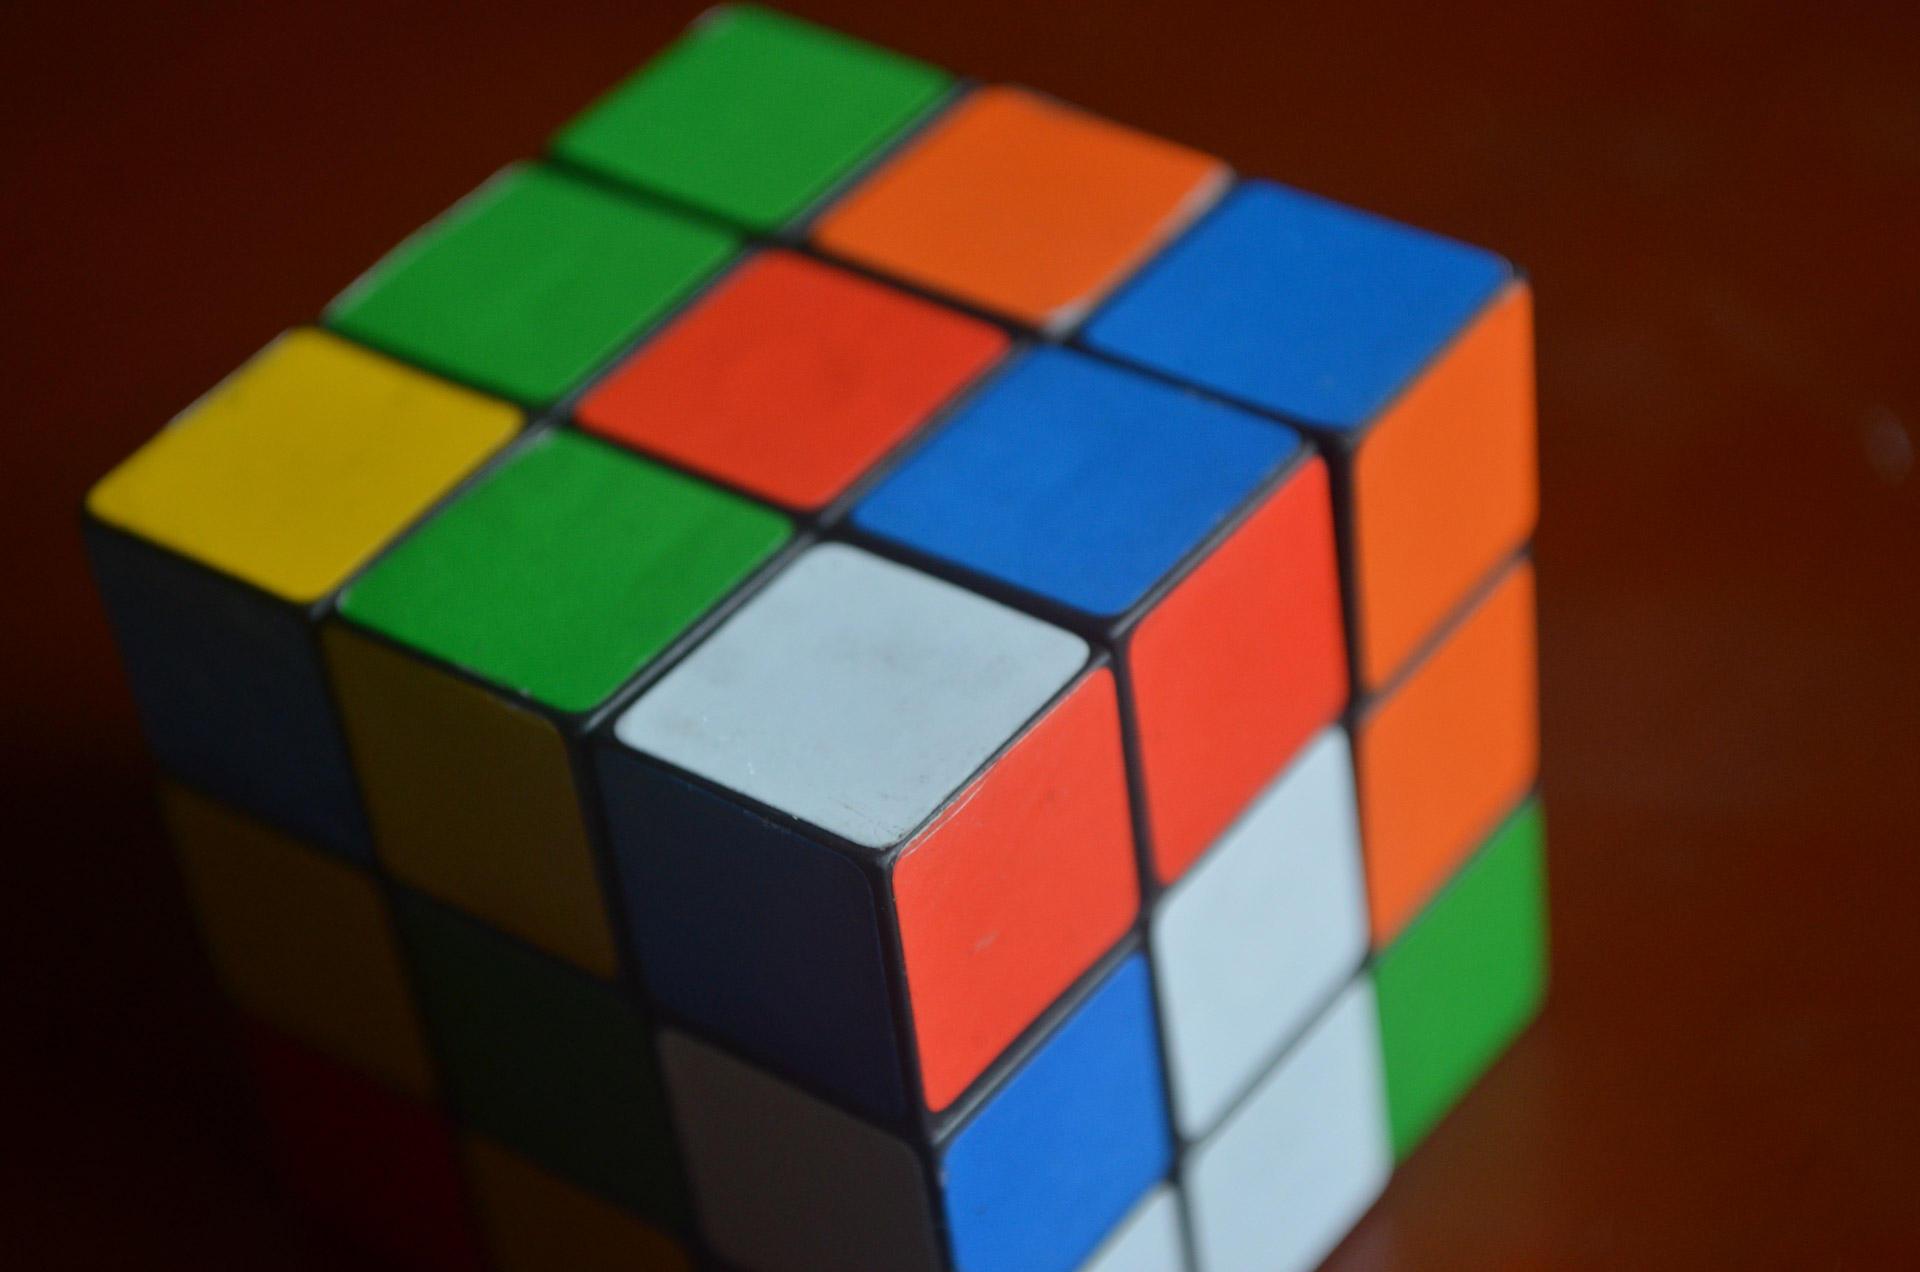 Cubul Rubik